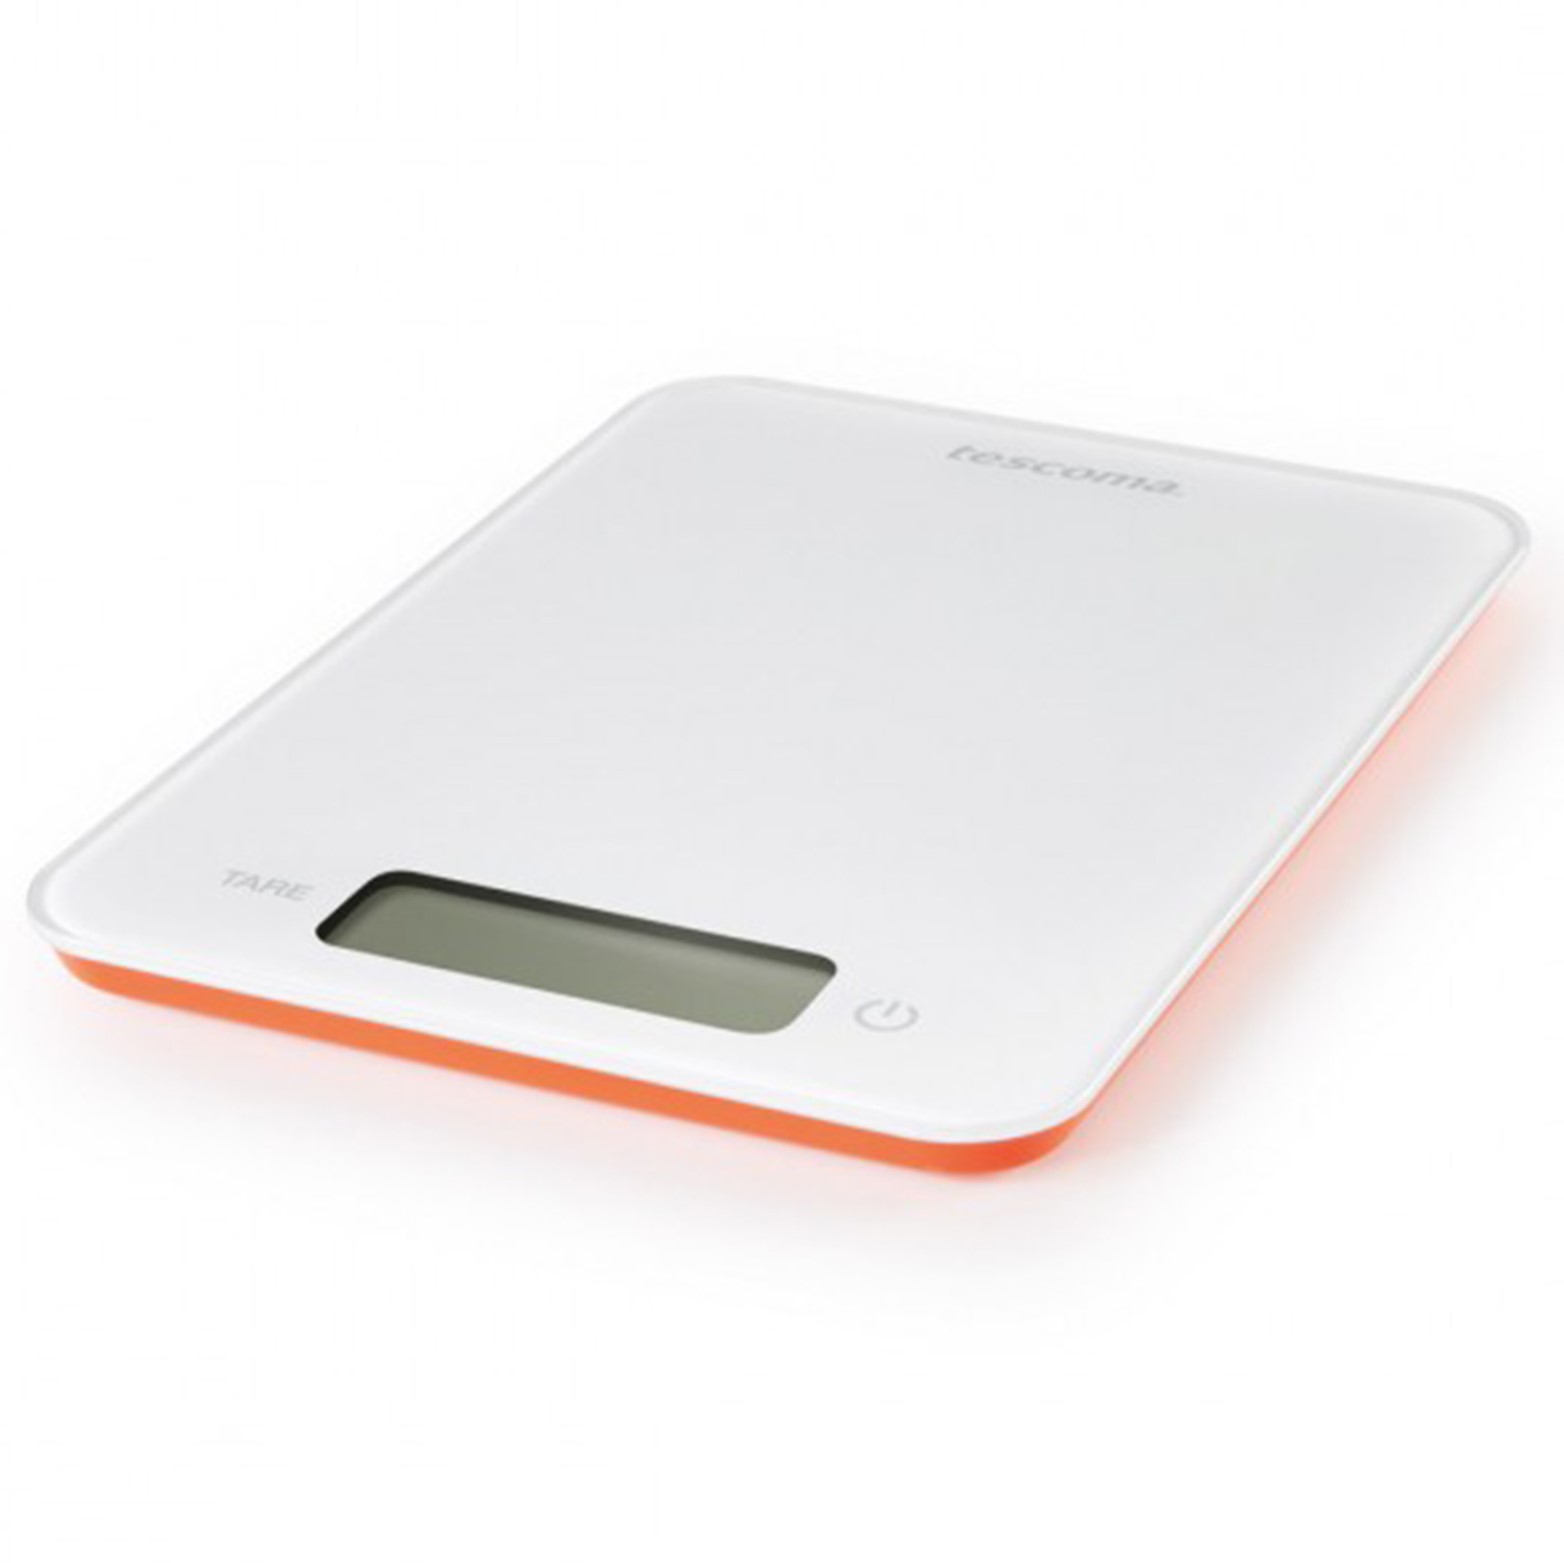 Весы кухонные электронные Accura вес до 5 кг, Tescoma, Чехия  | Фото — Магазин Andy Chef  1